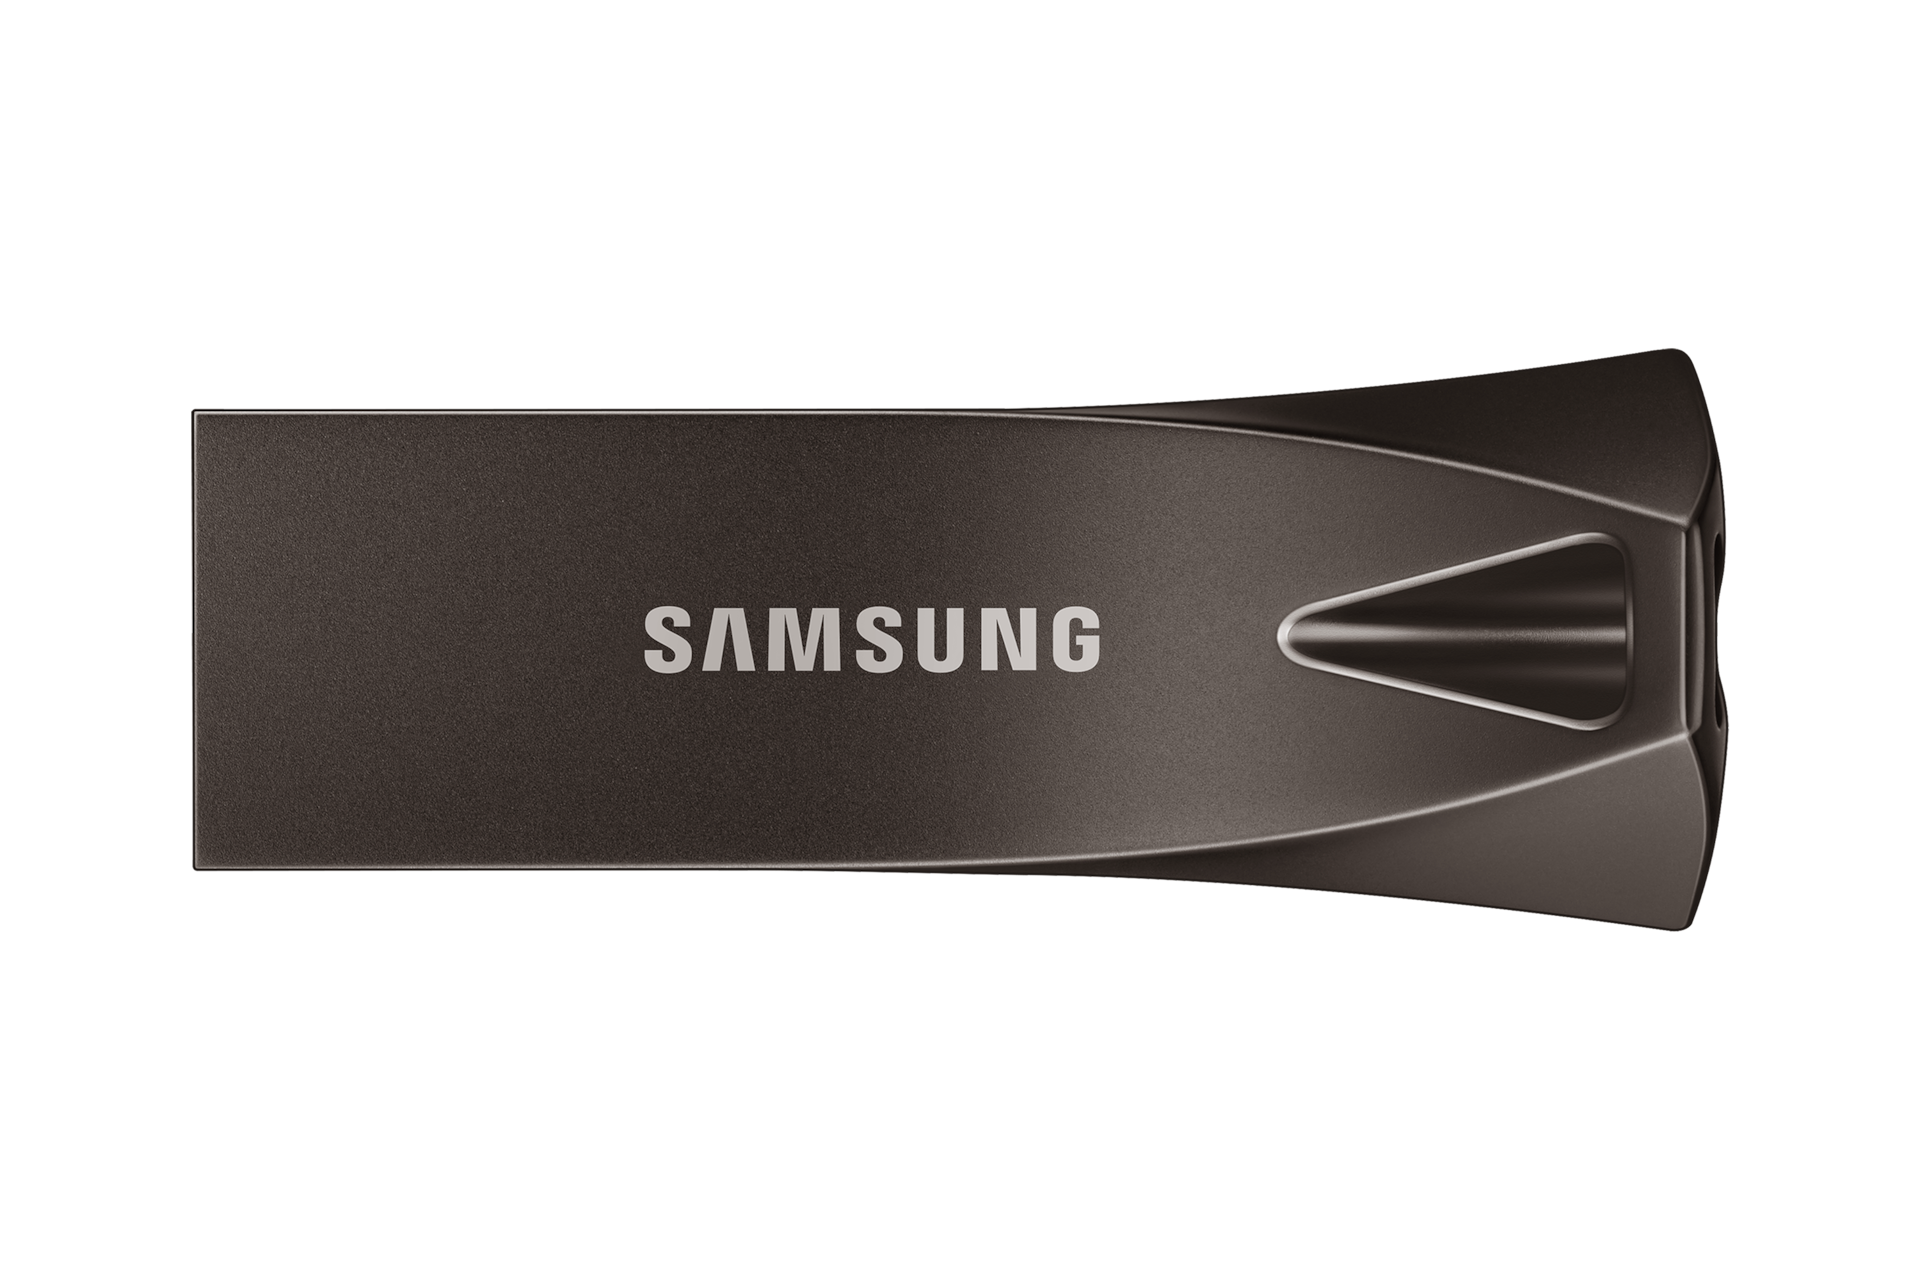 256 GB i aż do 400 MB/s szybkości odczytu - to właśnie wersja 2020 pendrive'a MUF-256BE4/APC Samsung BAR Plus 2020 z USB 3.1 Flash Drive w kolorze tytanowym szarym - zdjęcie wskazuje przód urządzenia